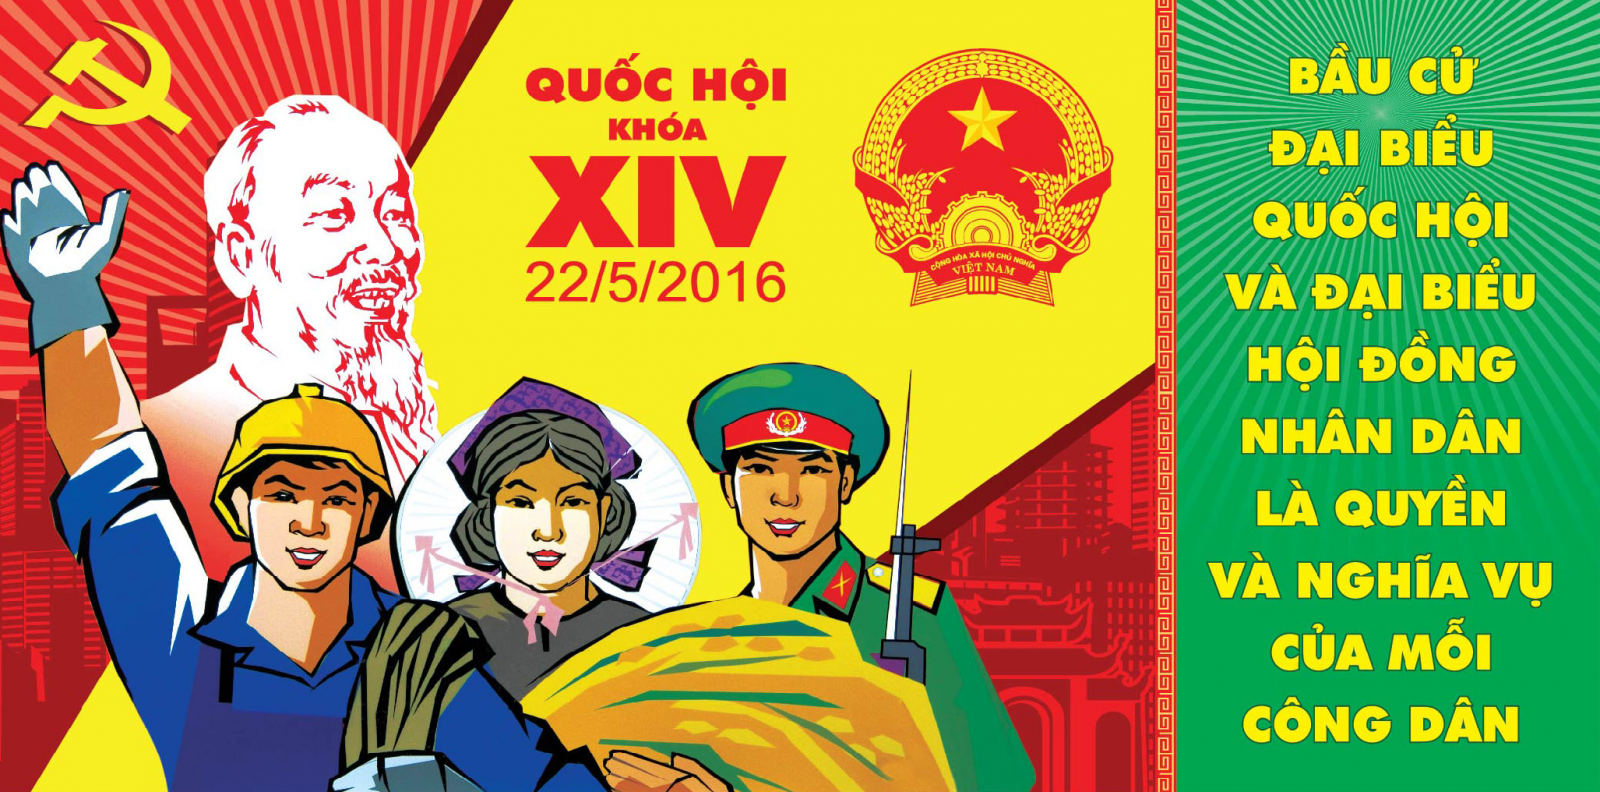 Chí Linh tích cực chuẩn bị cho ngày hội bầu cử 22/5/2016